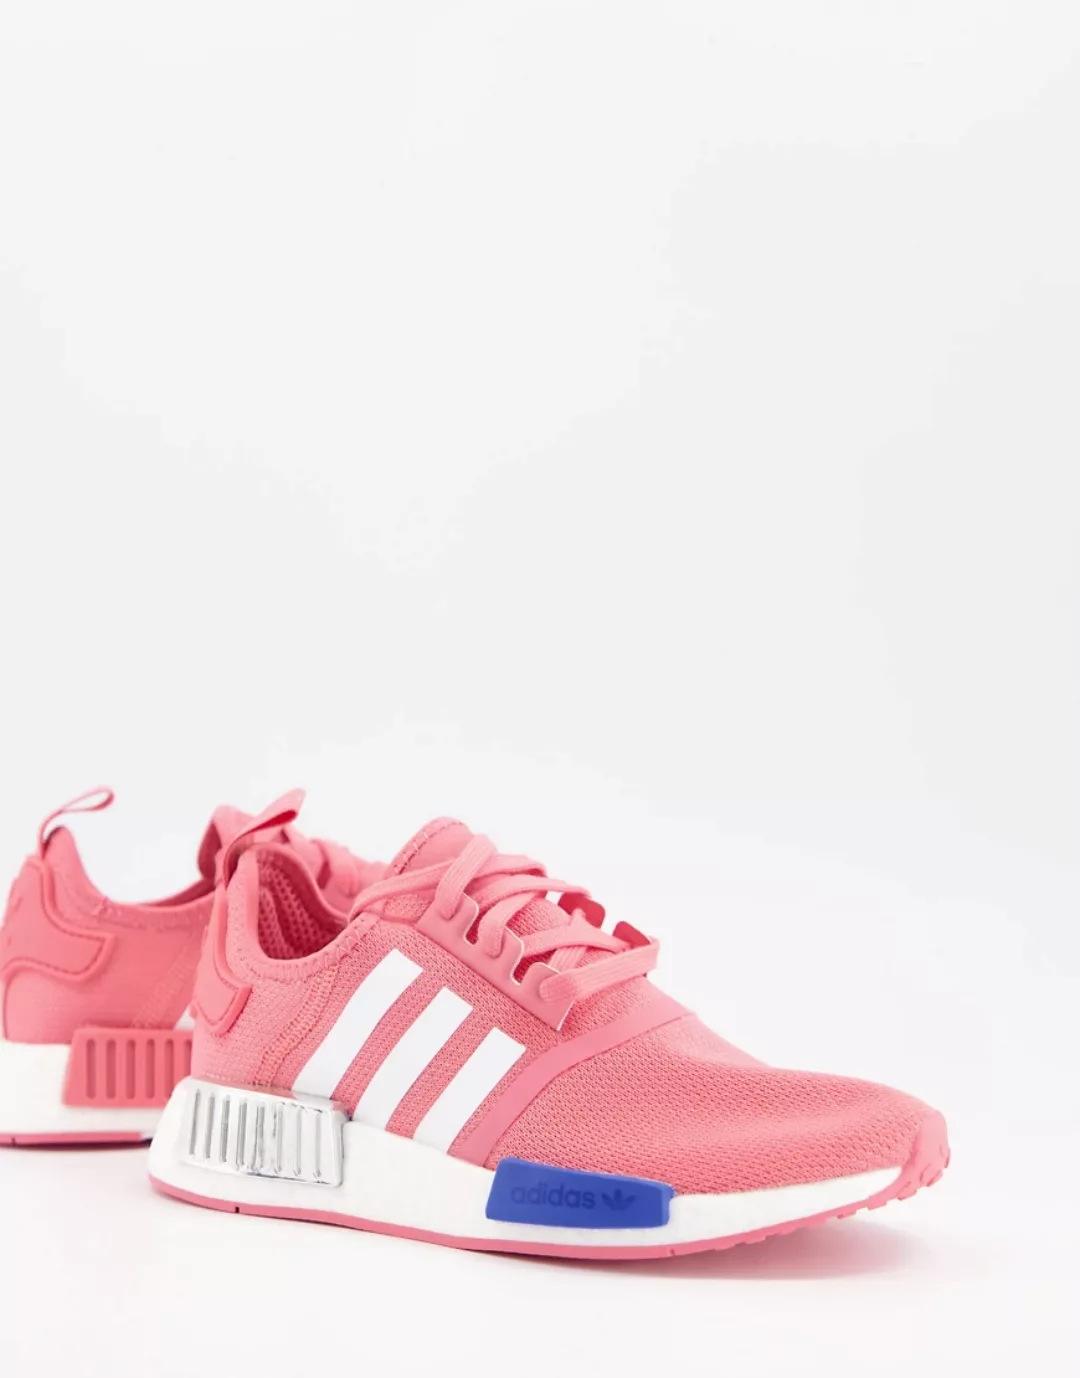 adidas Originals – NMD – Sneaker in Hot Pink-Rosa günstig online kaufen